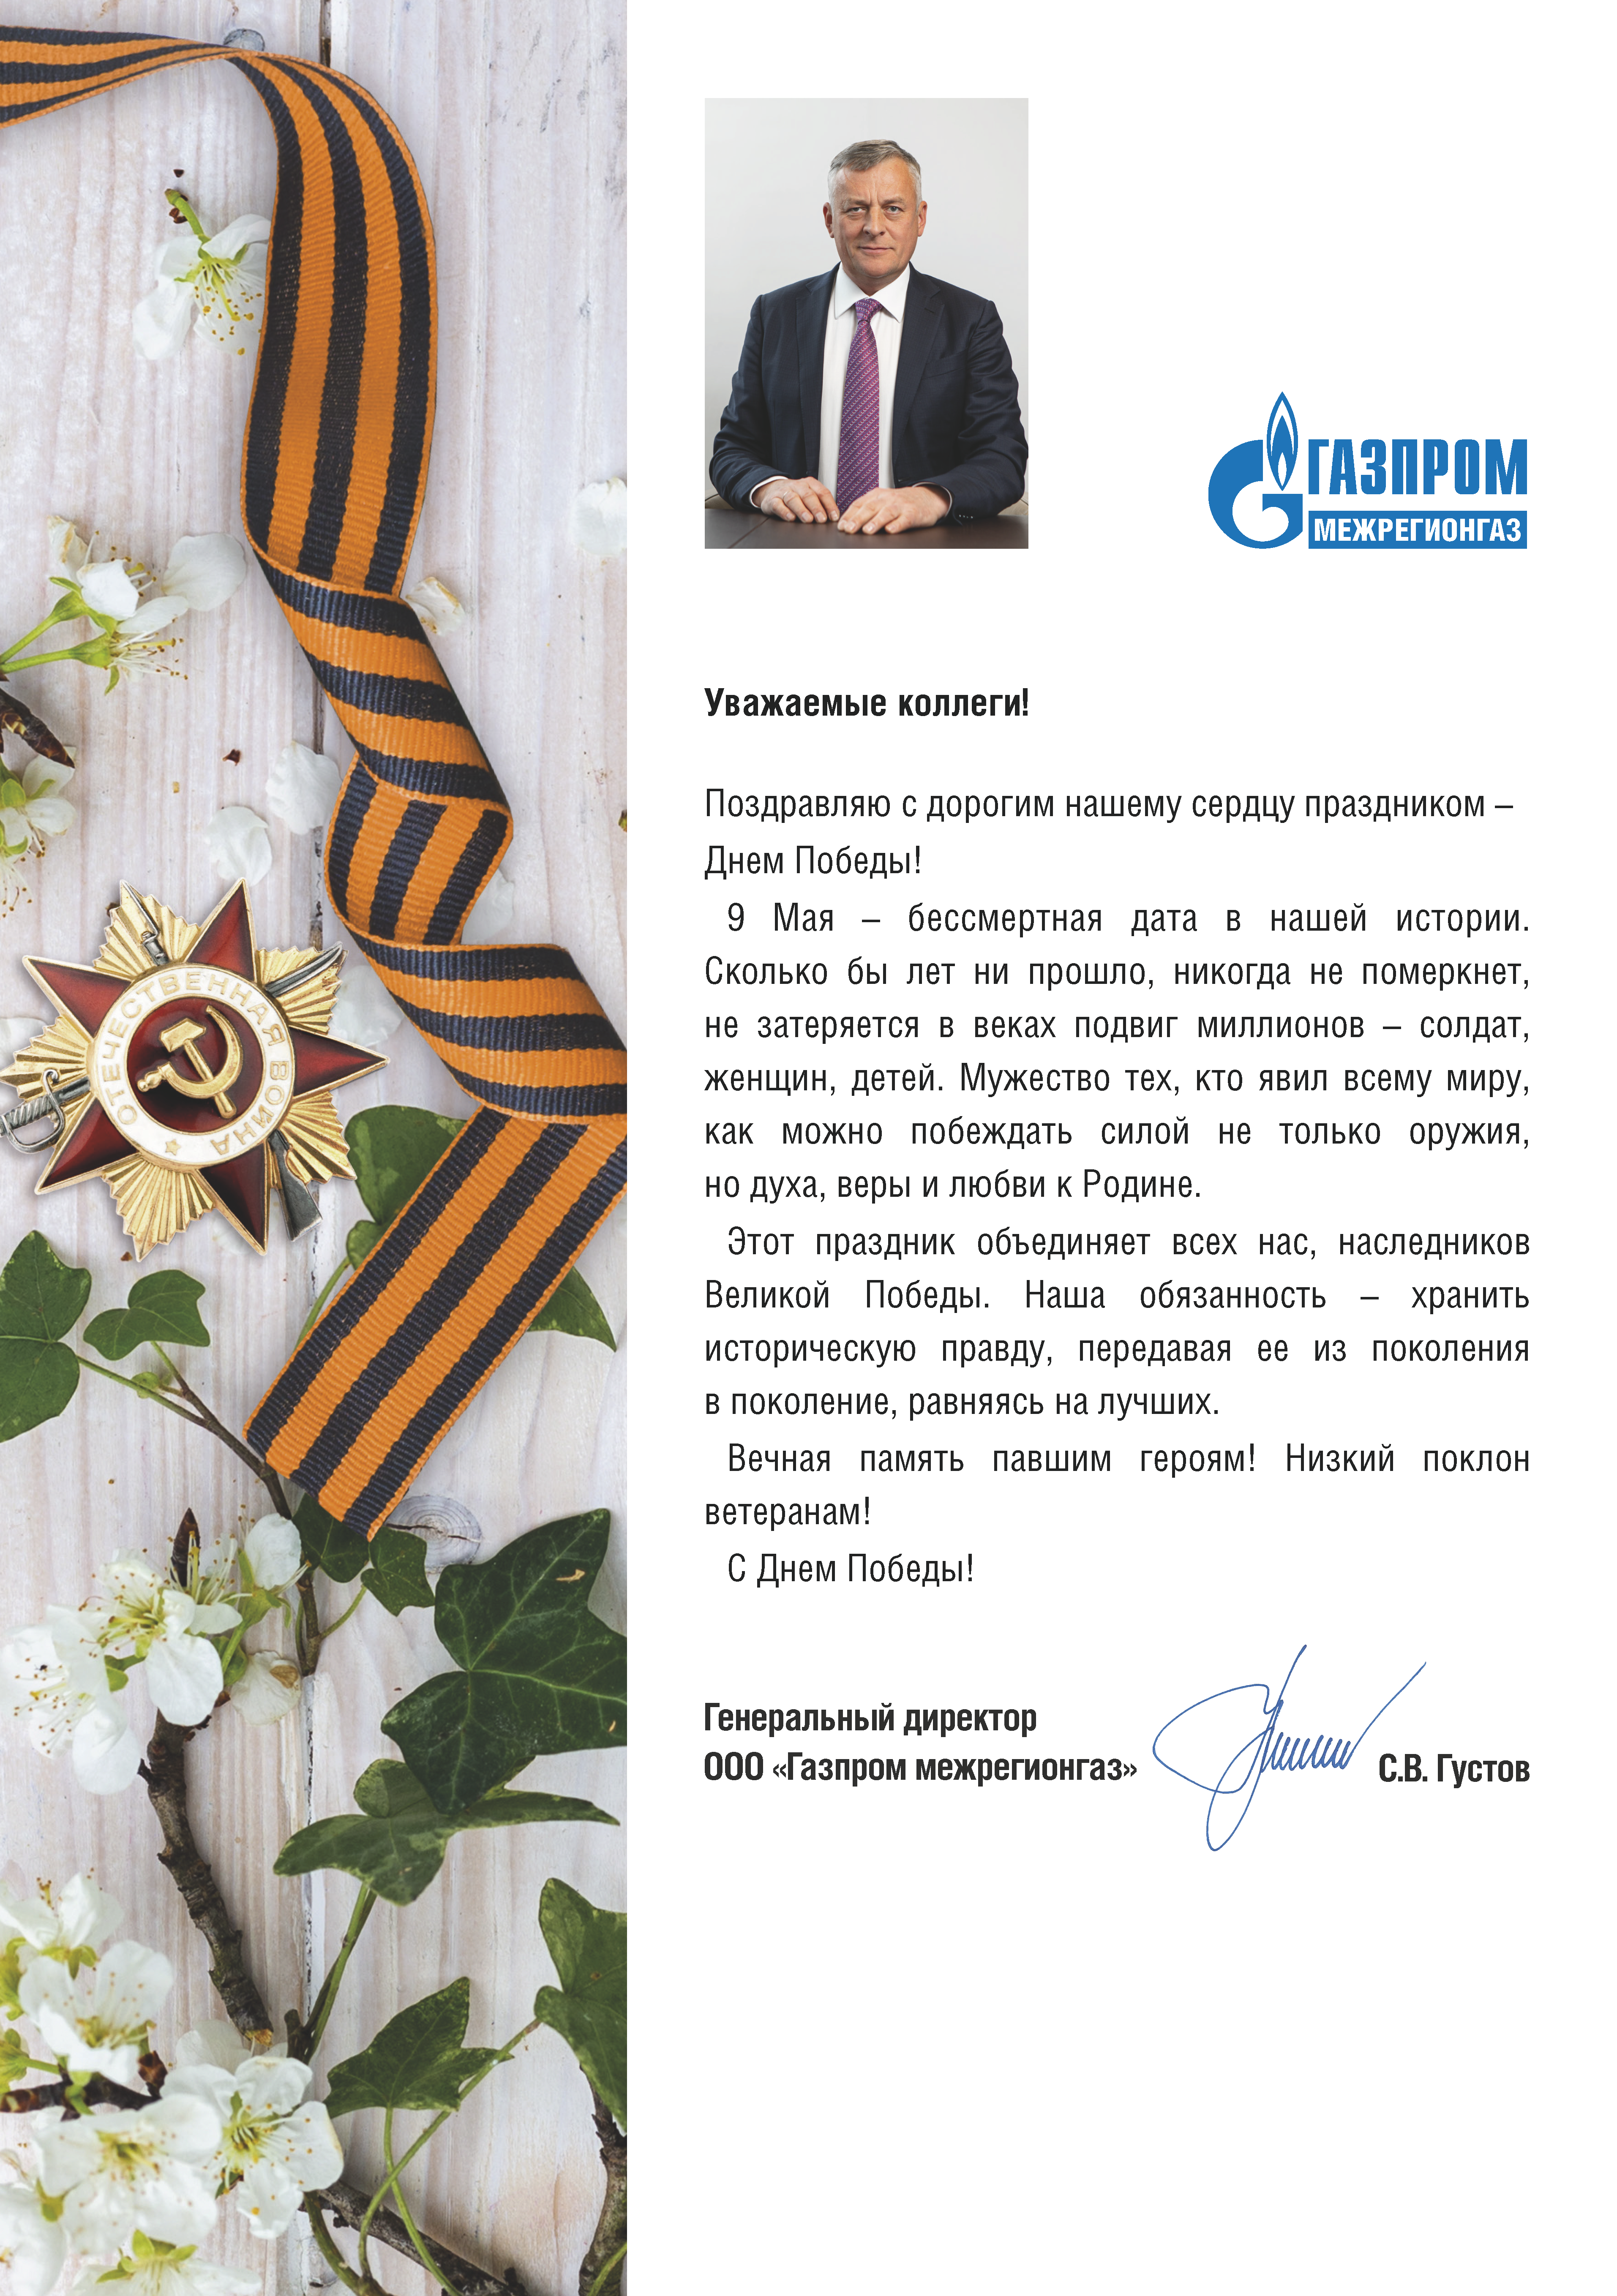 Поздравление с Днем Победы генерального директора ООО "Газпром межрегионгаз" С.В. Густова